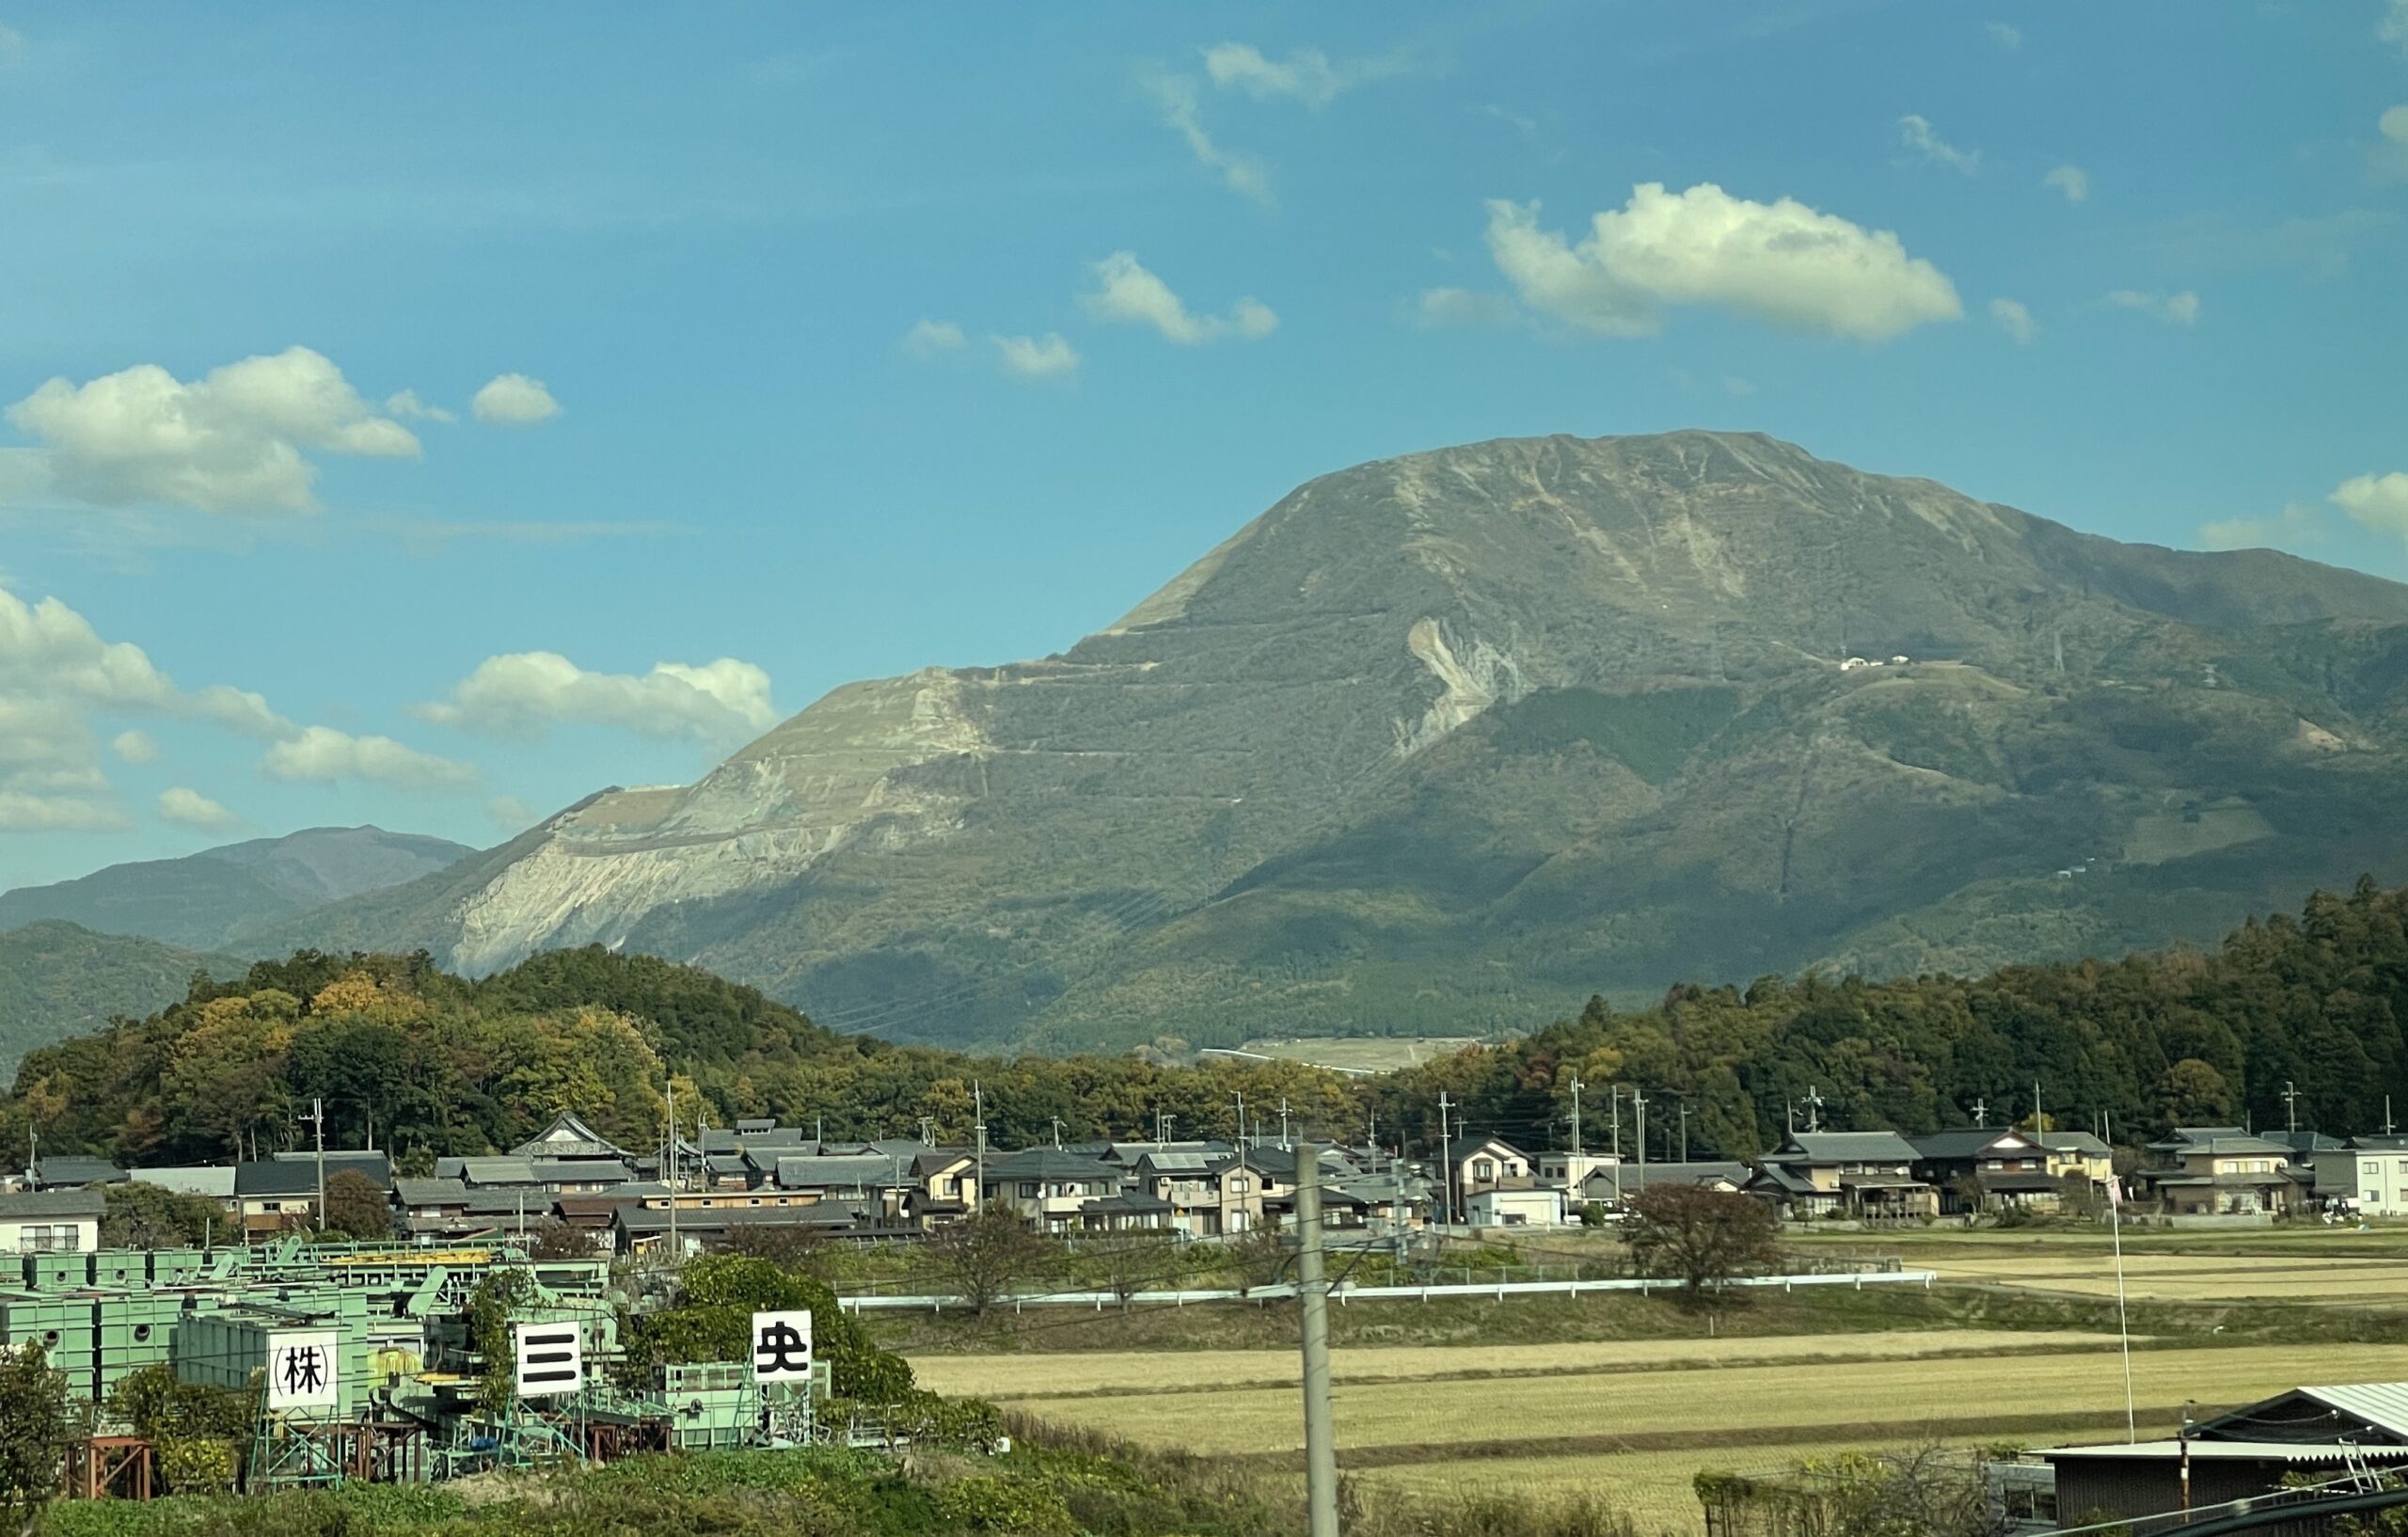 Fällt bei der Fahrt mit dem Shinkansen von Nagoya nach Kyoto deutlich ins Auge: Der Ibukiyama